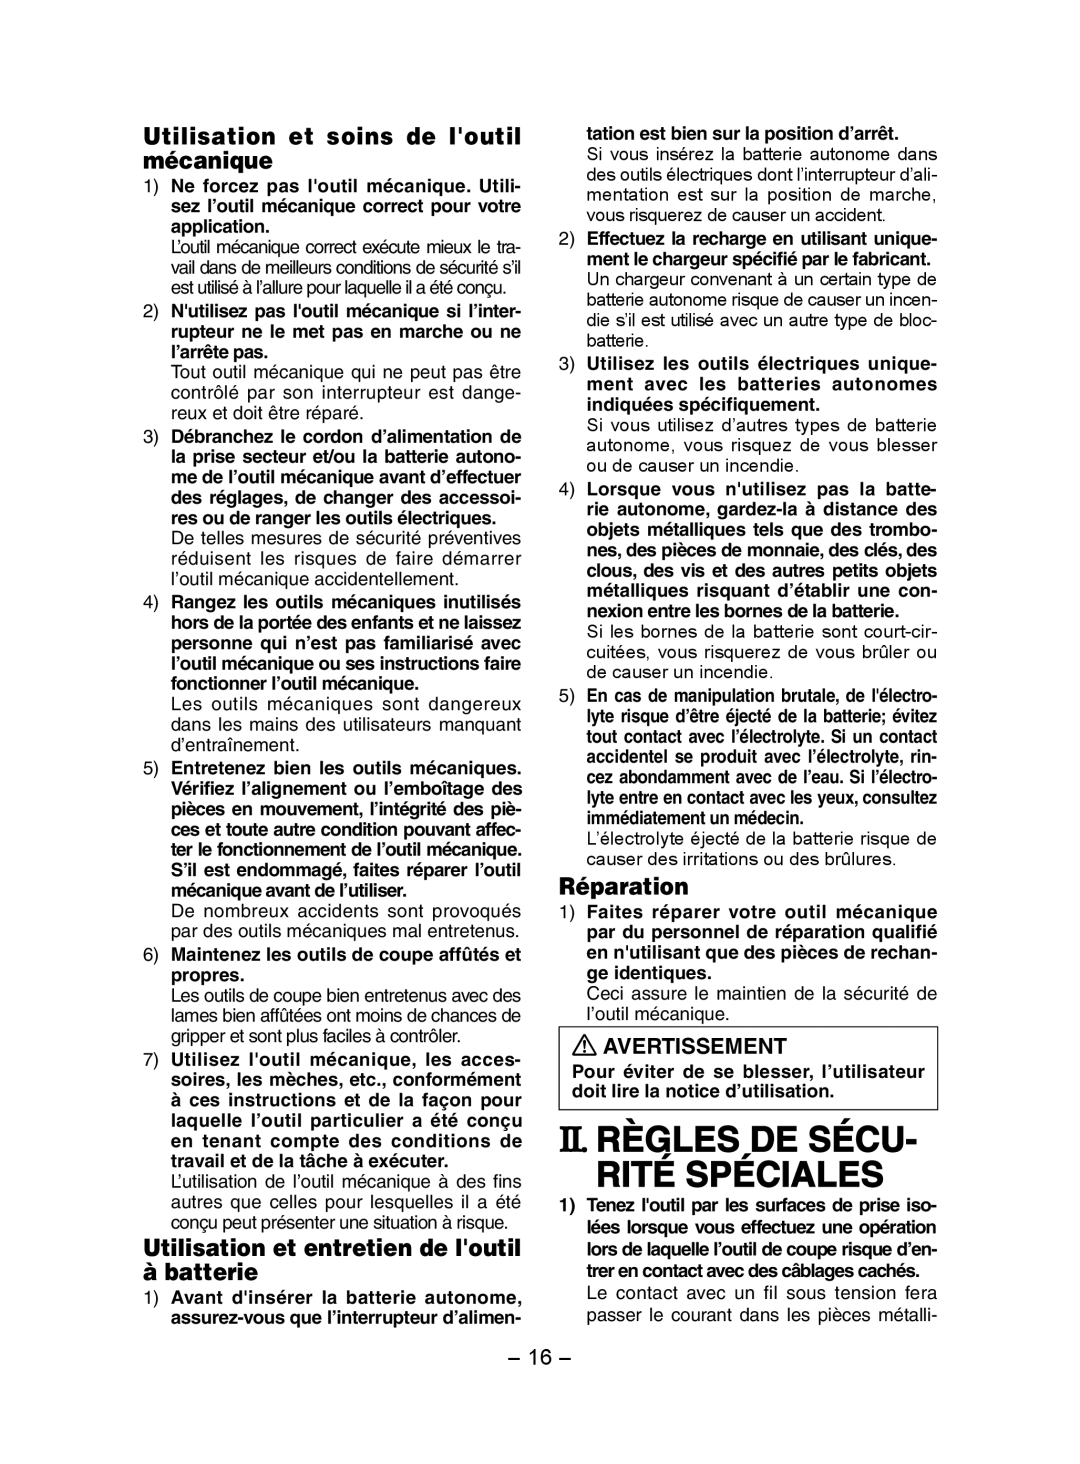 Panasonic EY7202 Ii. Règles De Sécu Rité Spéciales, Utilisation et soins de loutil mécanique, Réparation, Avertissement 